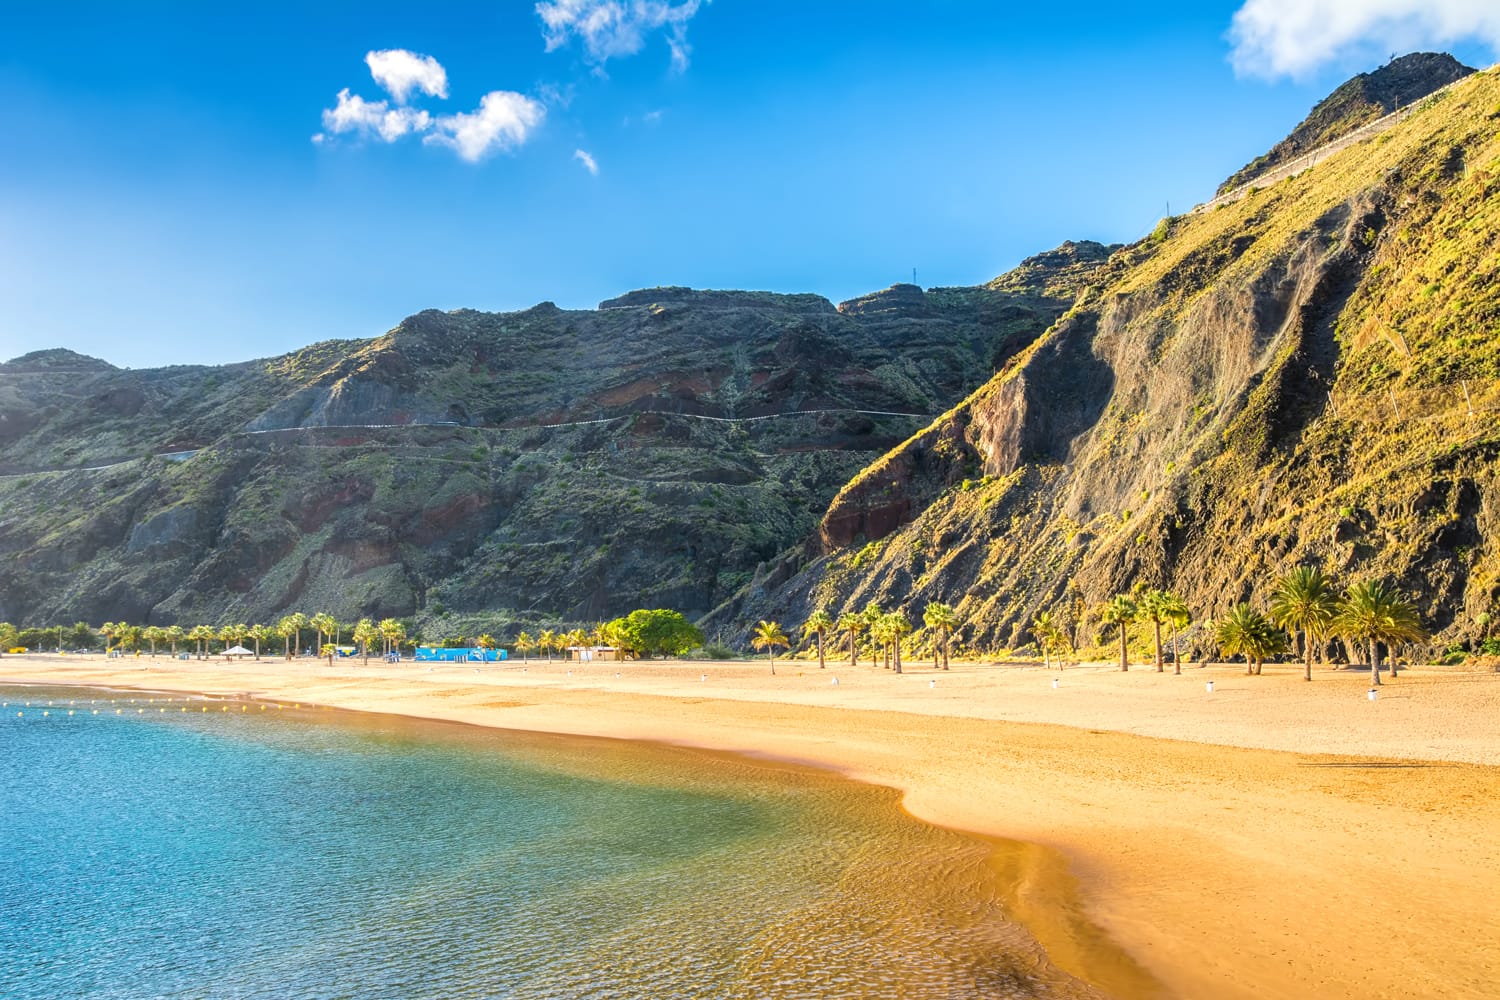 Καταπληκτική θέα στην παραλία Λας Τερεσίτας με την κίτρινη άμμο.  Τοποθεσία: Santa Cruz de Tenerife, Τενερίφη, Κανάρια Νησιά.